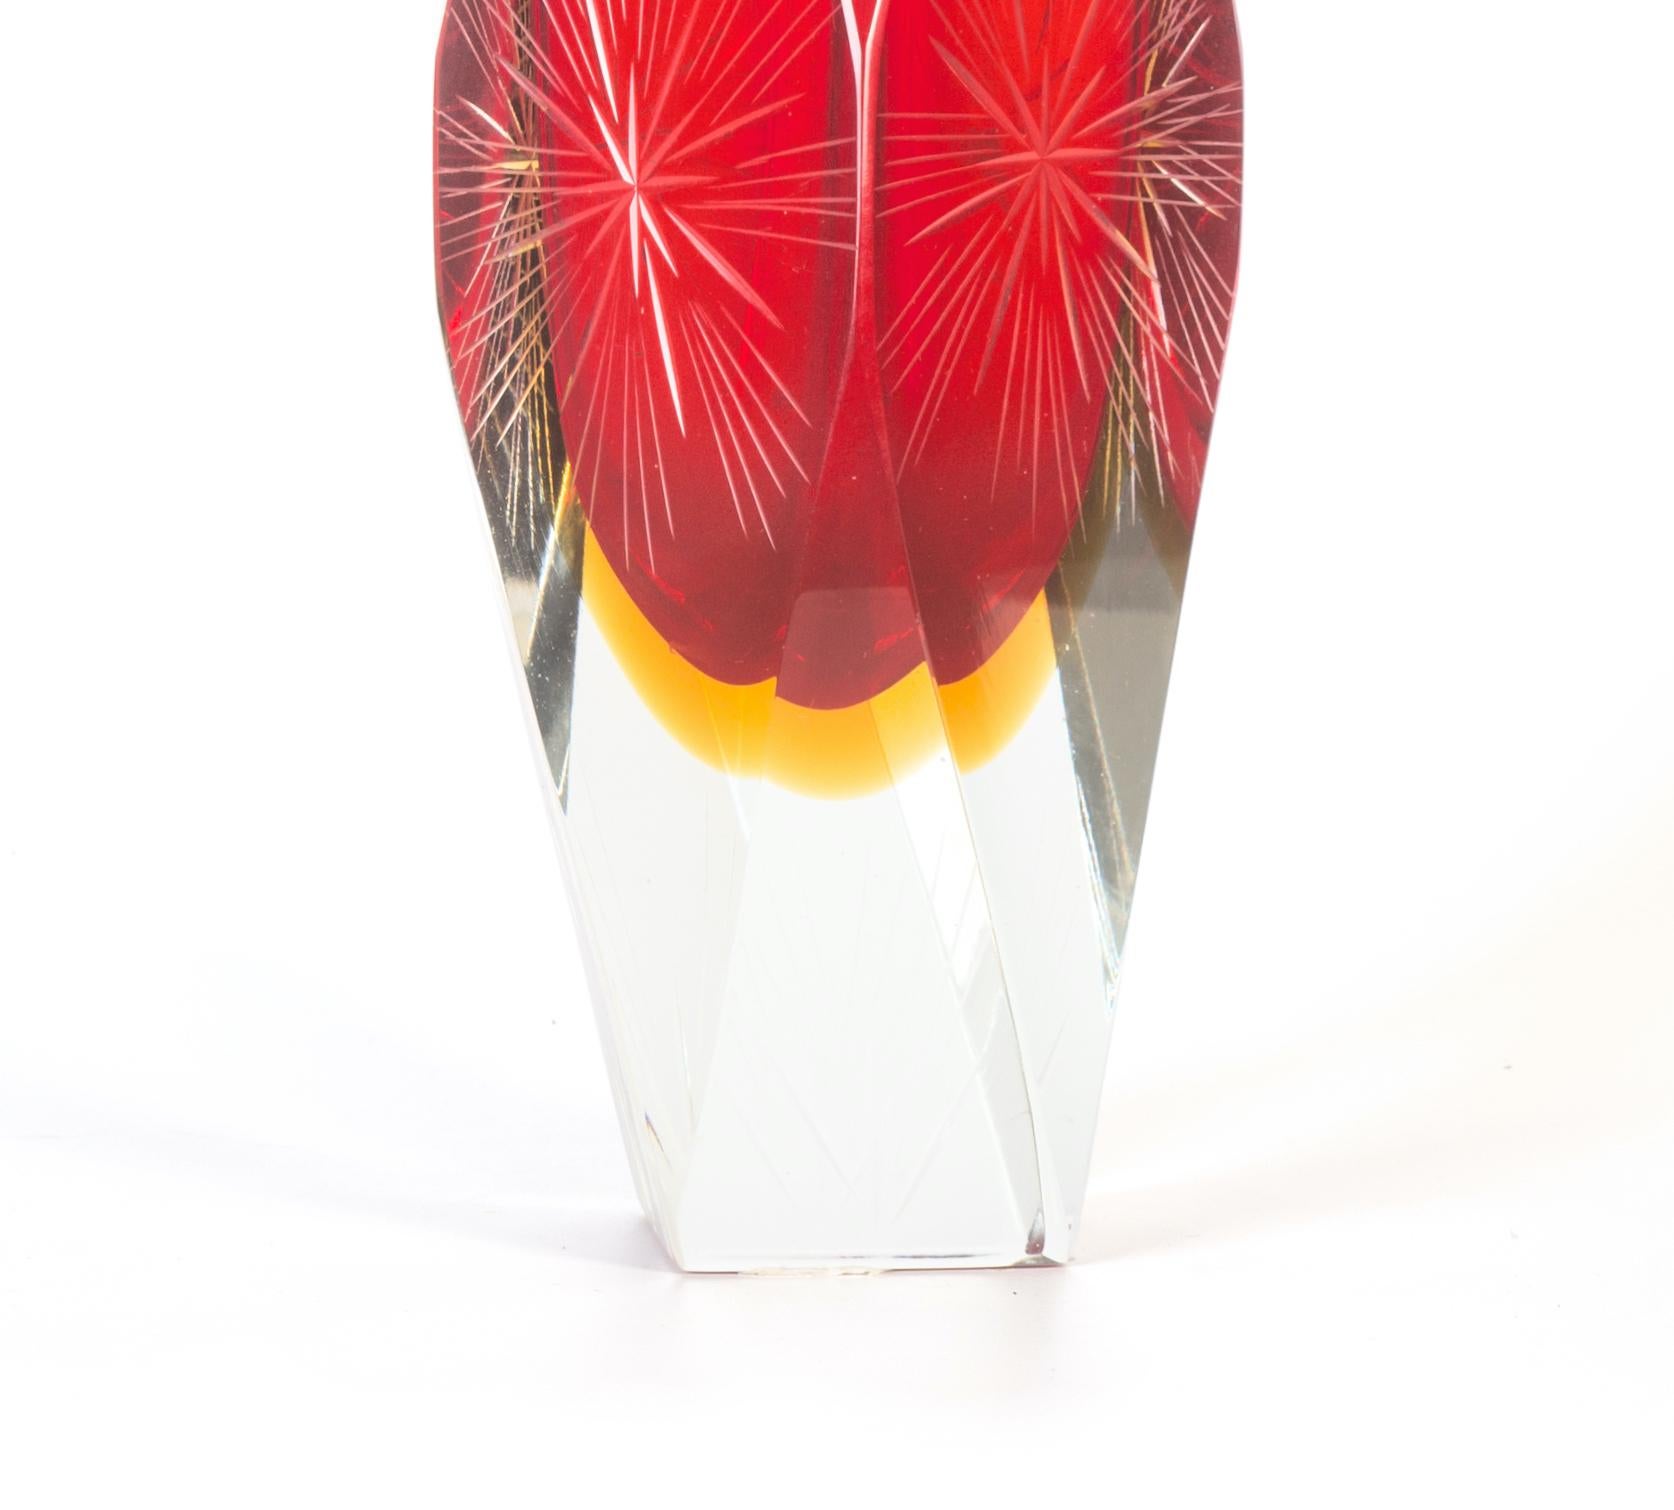 Die Vase aus rotem Kristall ist ein wunderschönes Dekorationsobjekt aus Kristall, das in den 1970er Jahren in einer italienischen Manufaktur hergestellt wurde.

Sehr modische, rote, facettenreiche Vase mit eleganten, sternförmigen Verzierungen